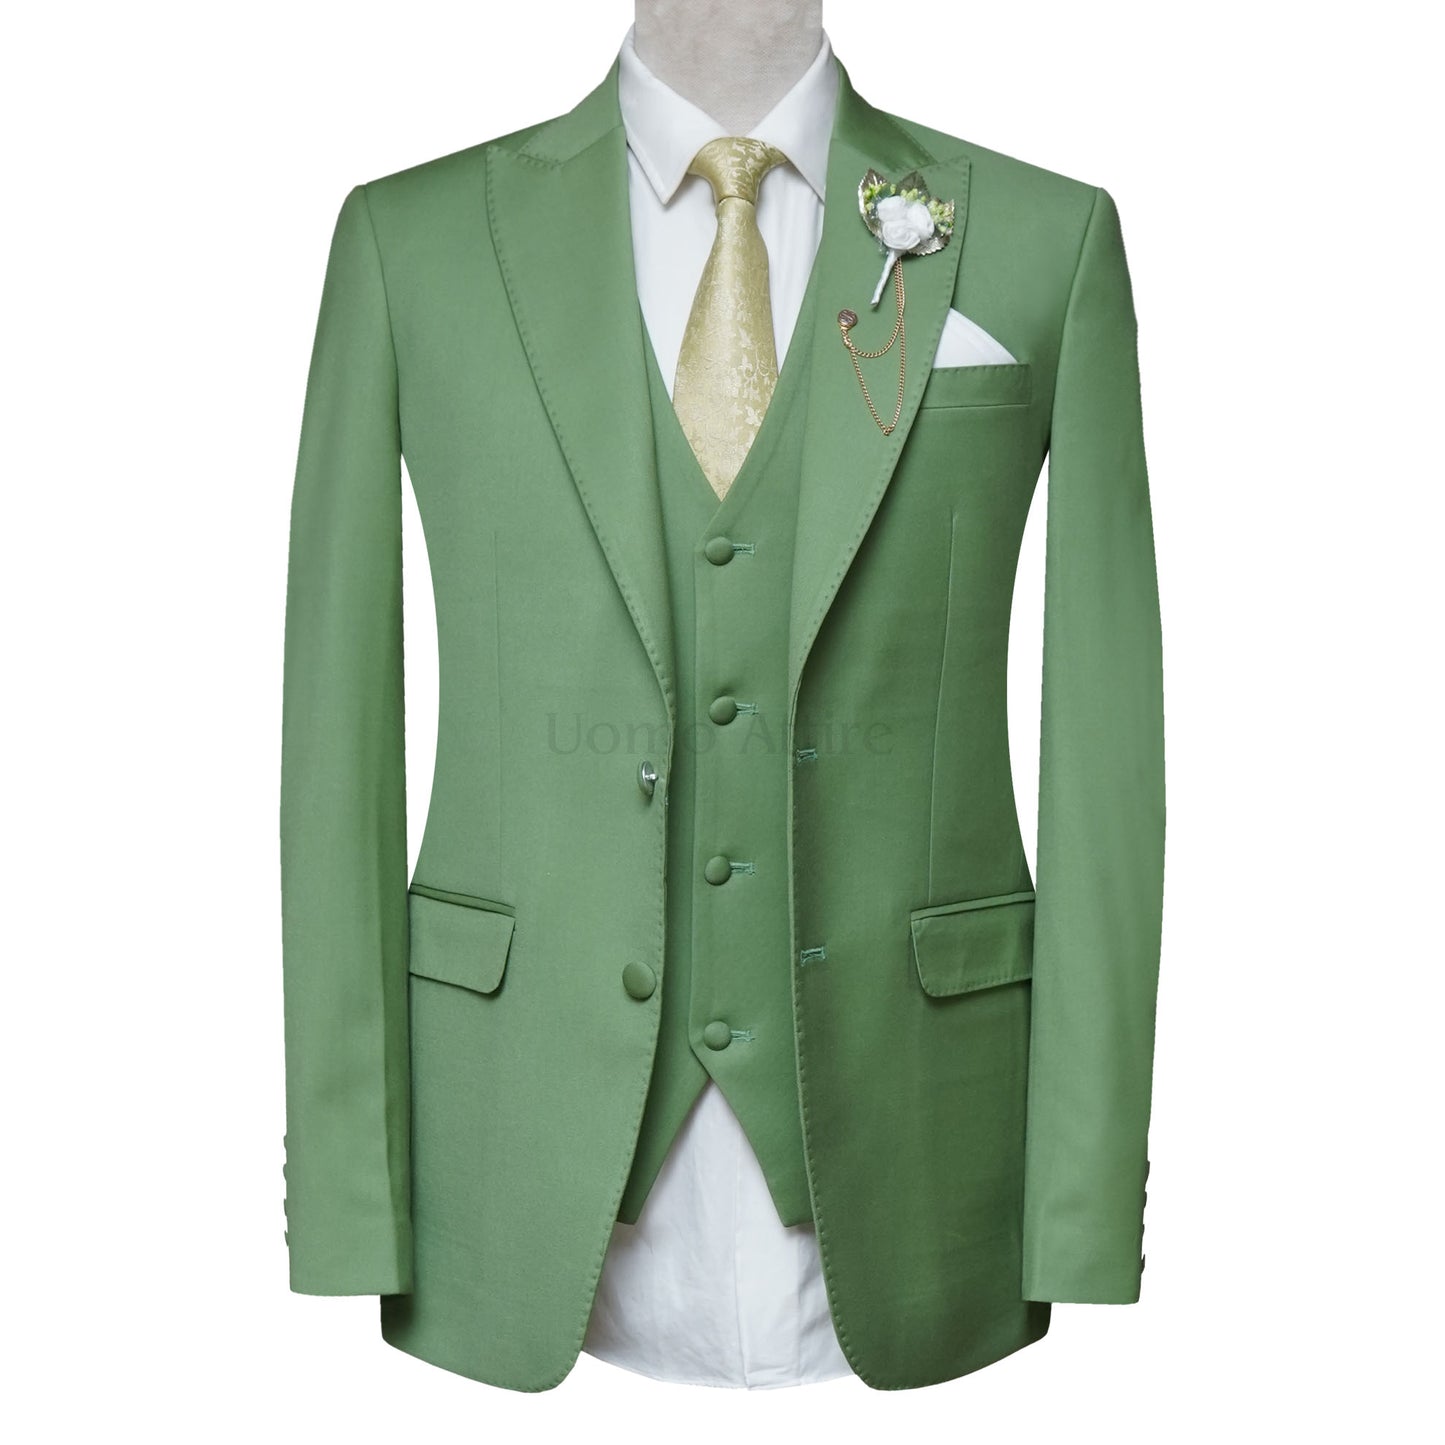 Men's Green 3 Piece Suit with Golden Contrast Tie